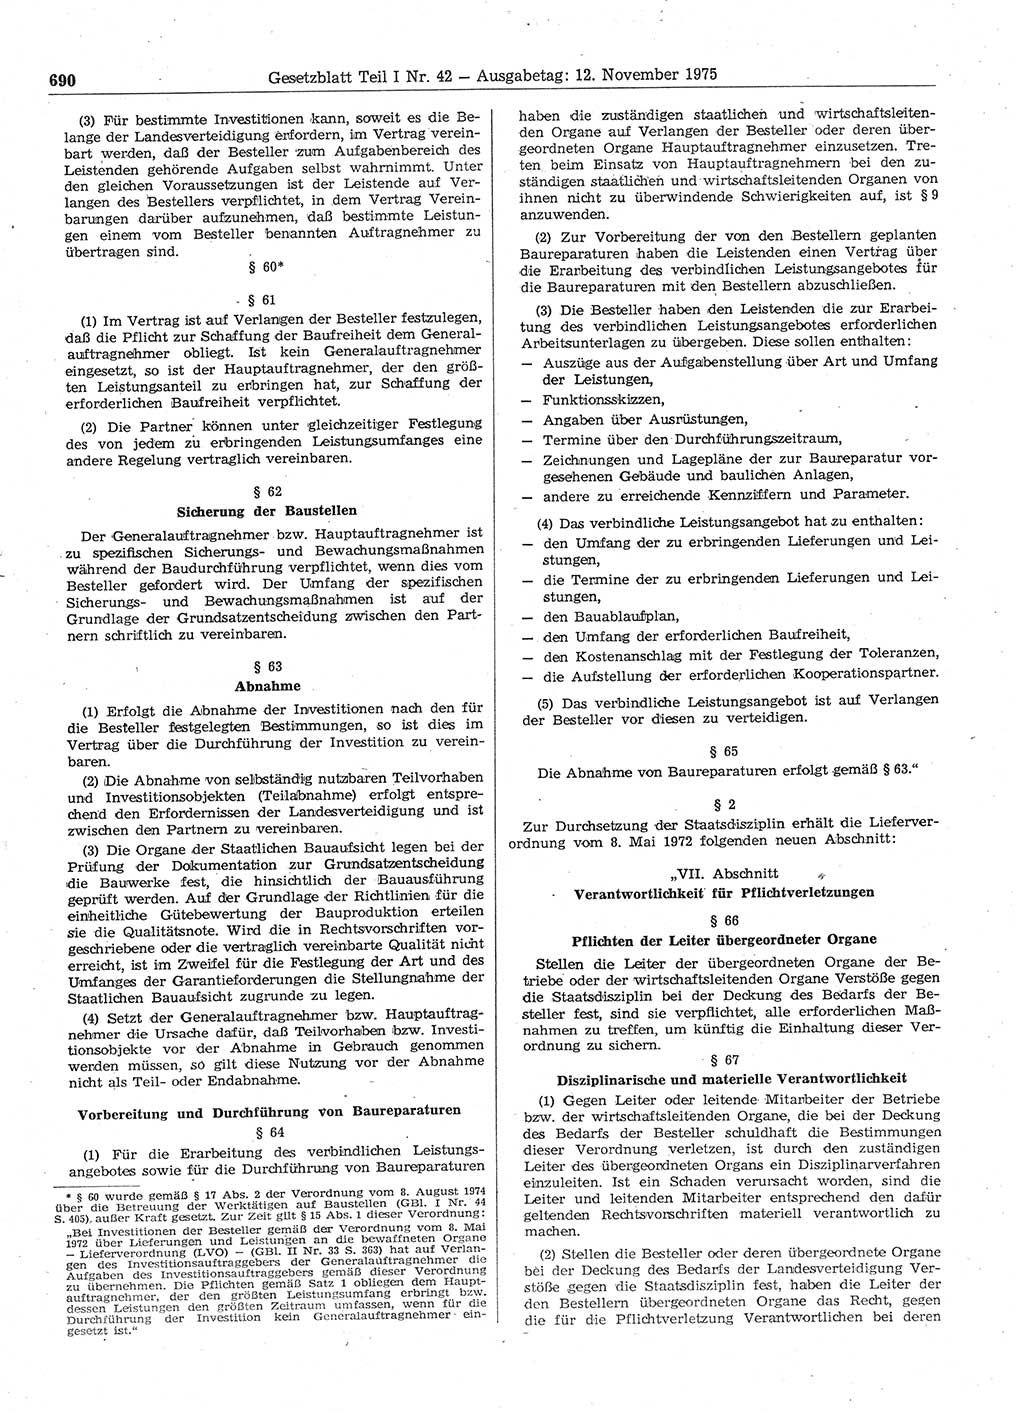 Gesetzblatt (GBl.) der Deutschen Demokratischen Republik (DDR) Teil Ⅰ 1975, Seite 690 (GBl. DDR Ⅰ 1975, S. 690)